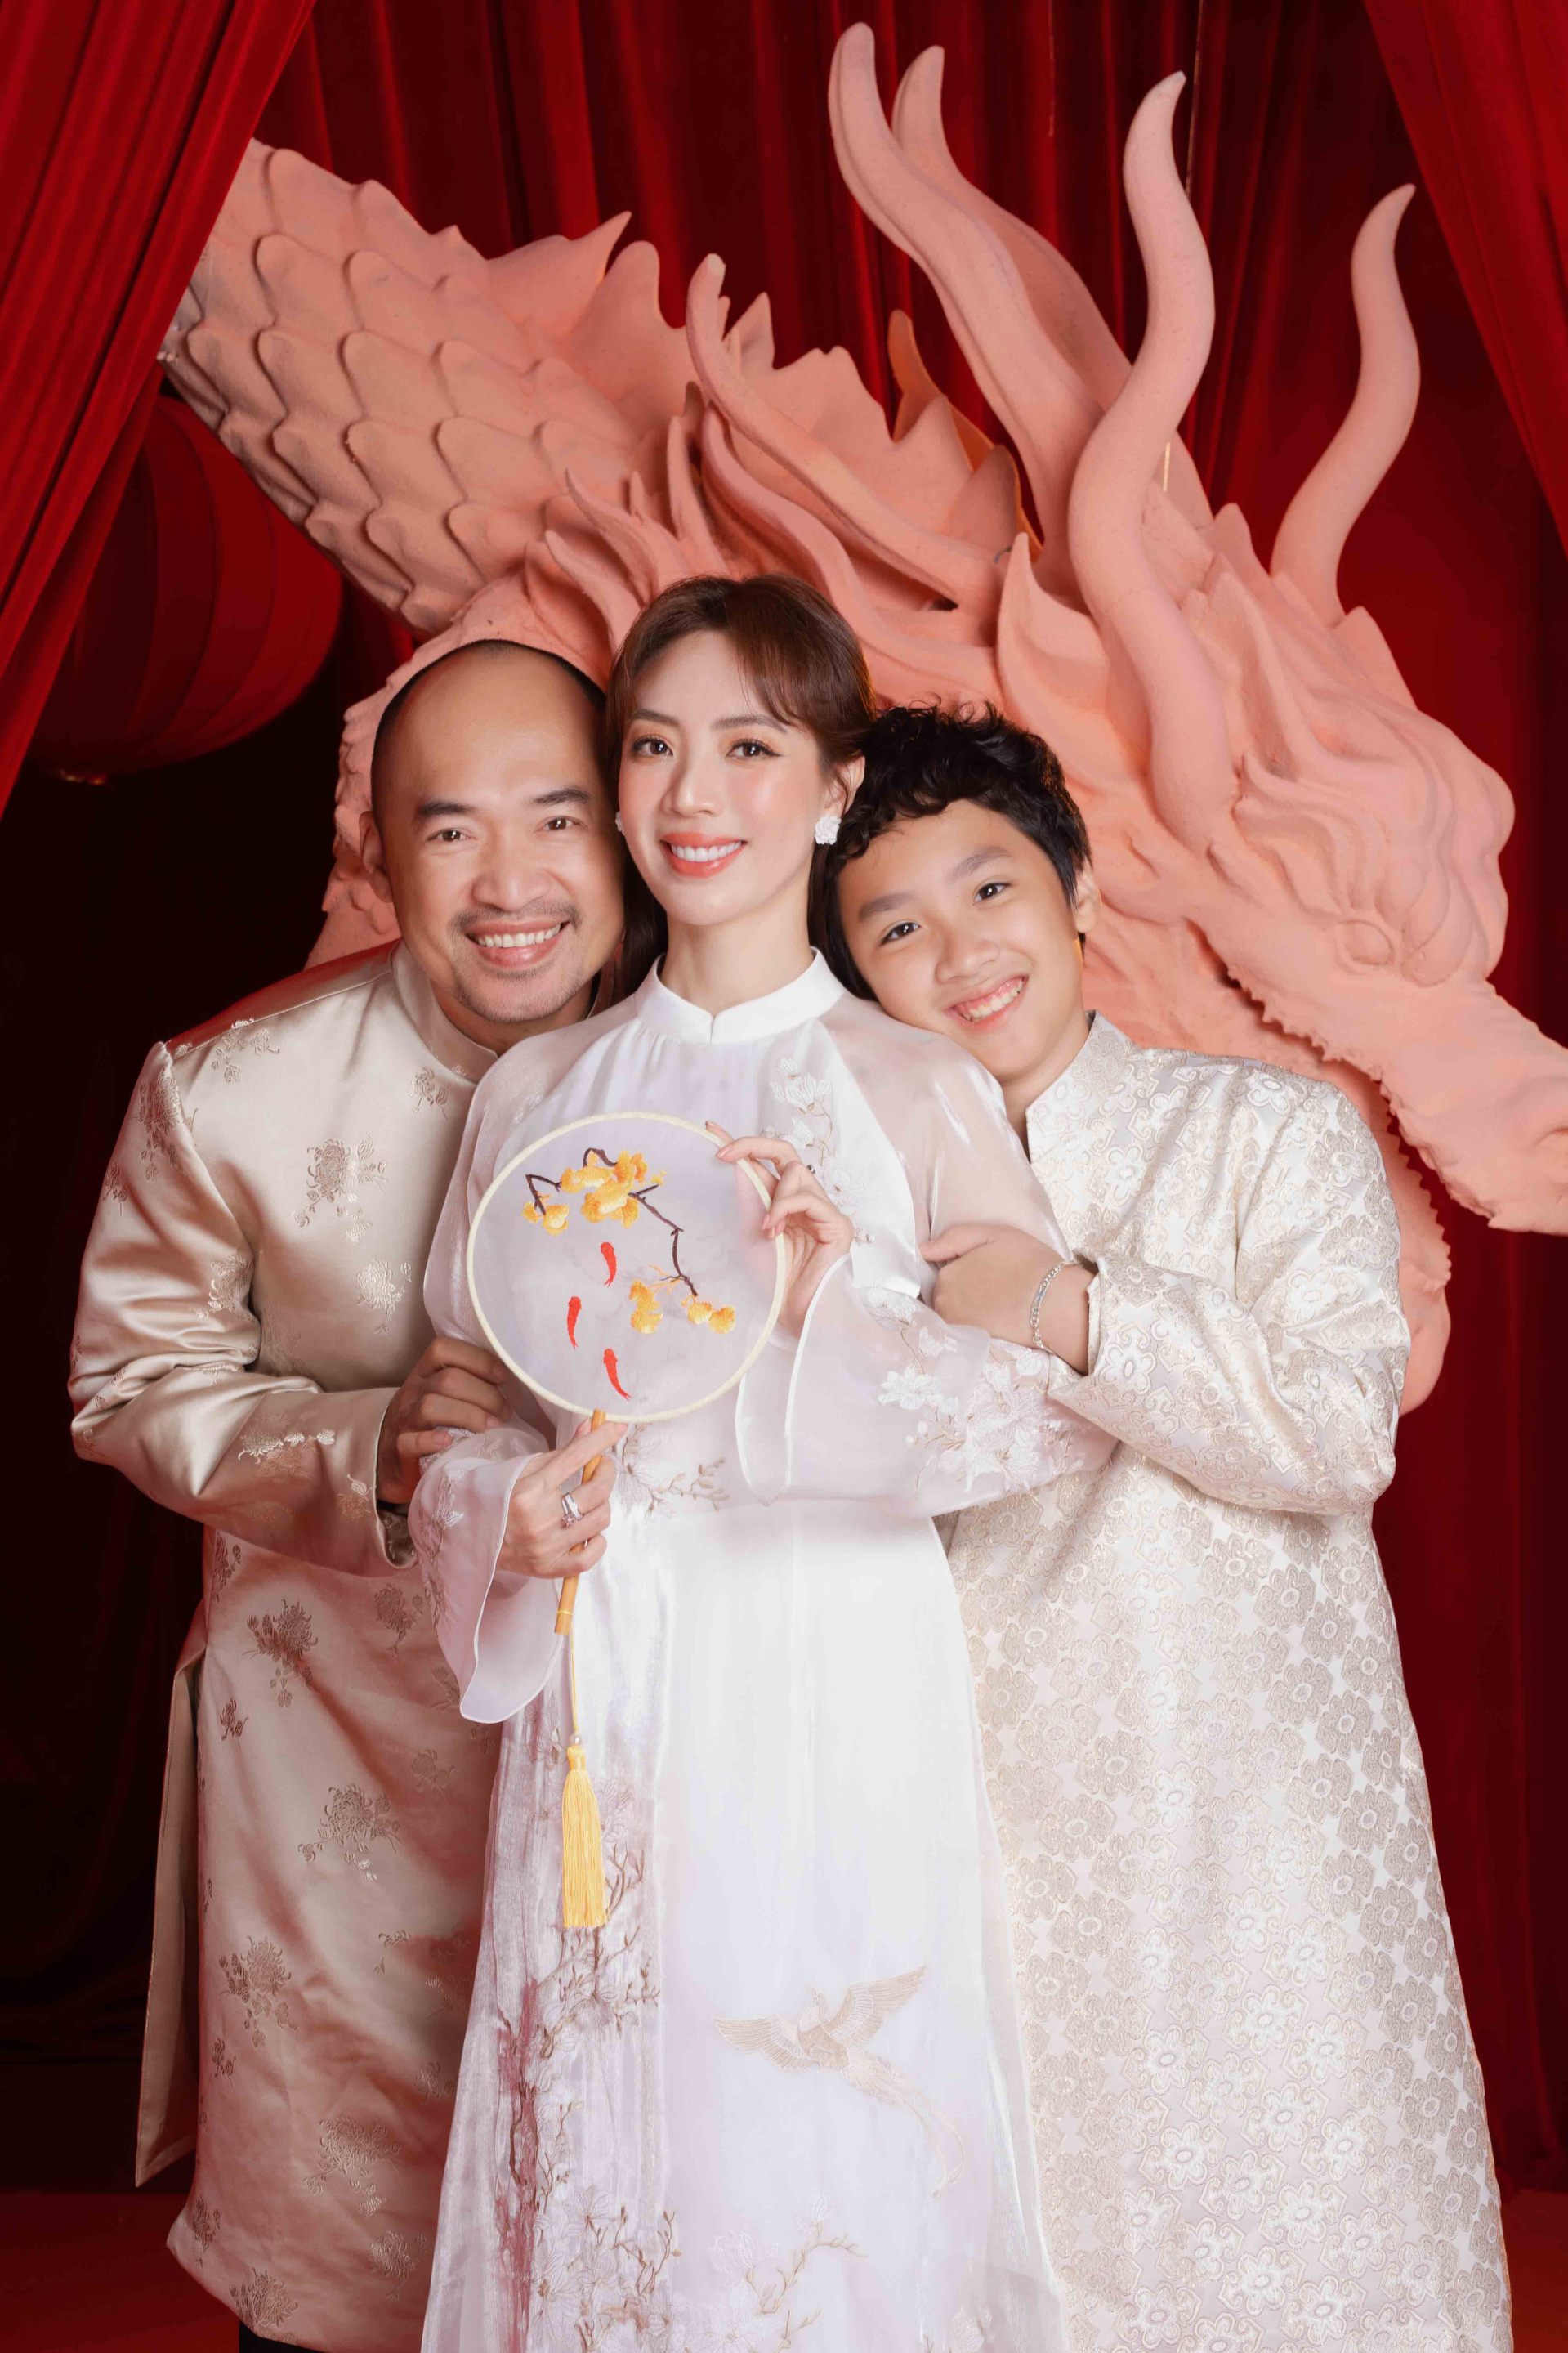 Thu Trang tự hào khi con trai ngoan ngoãn, biết yêu thương mọi người - ảnh 3